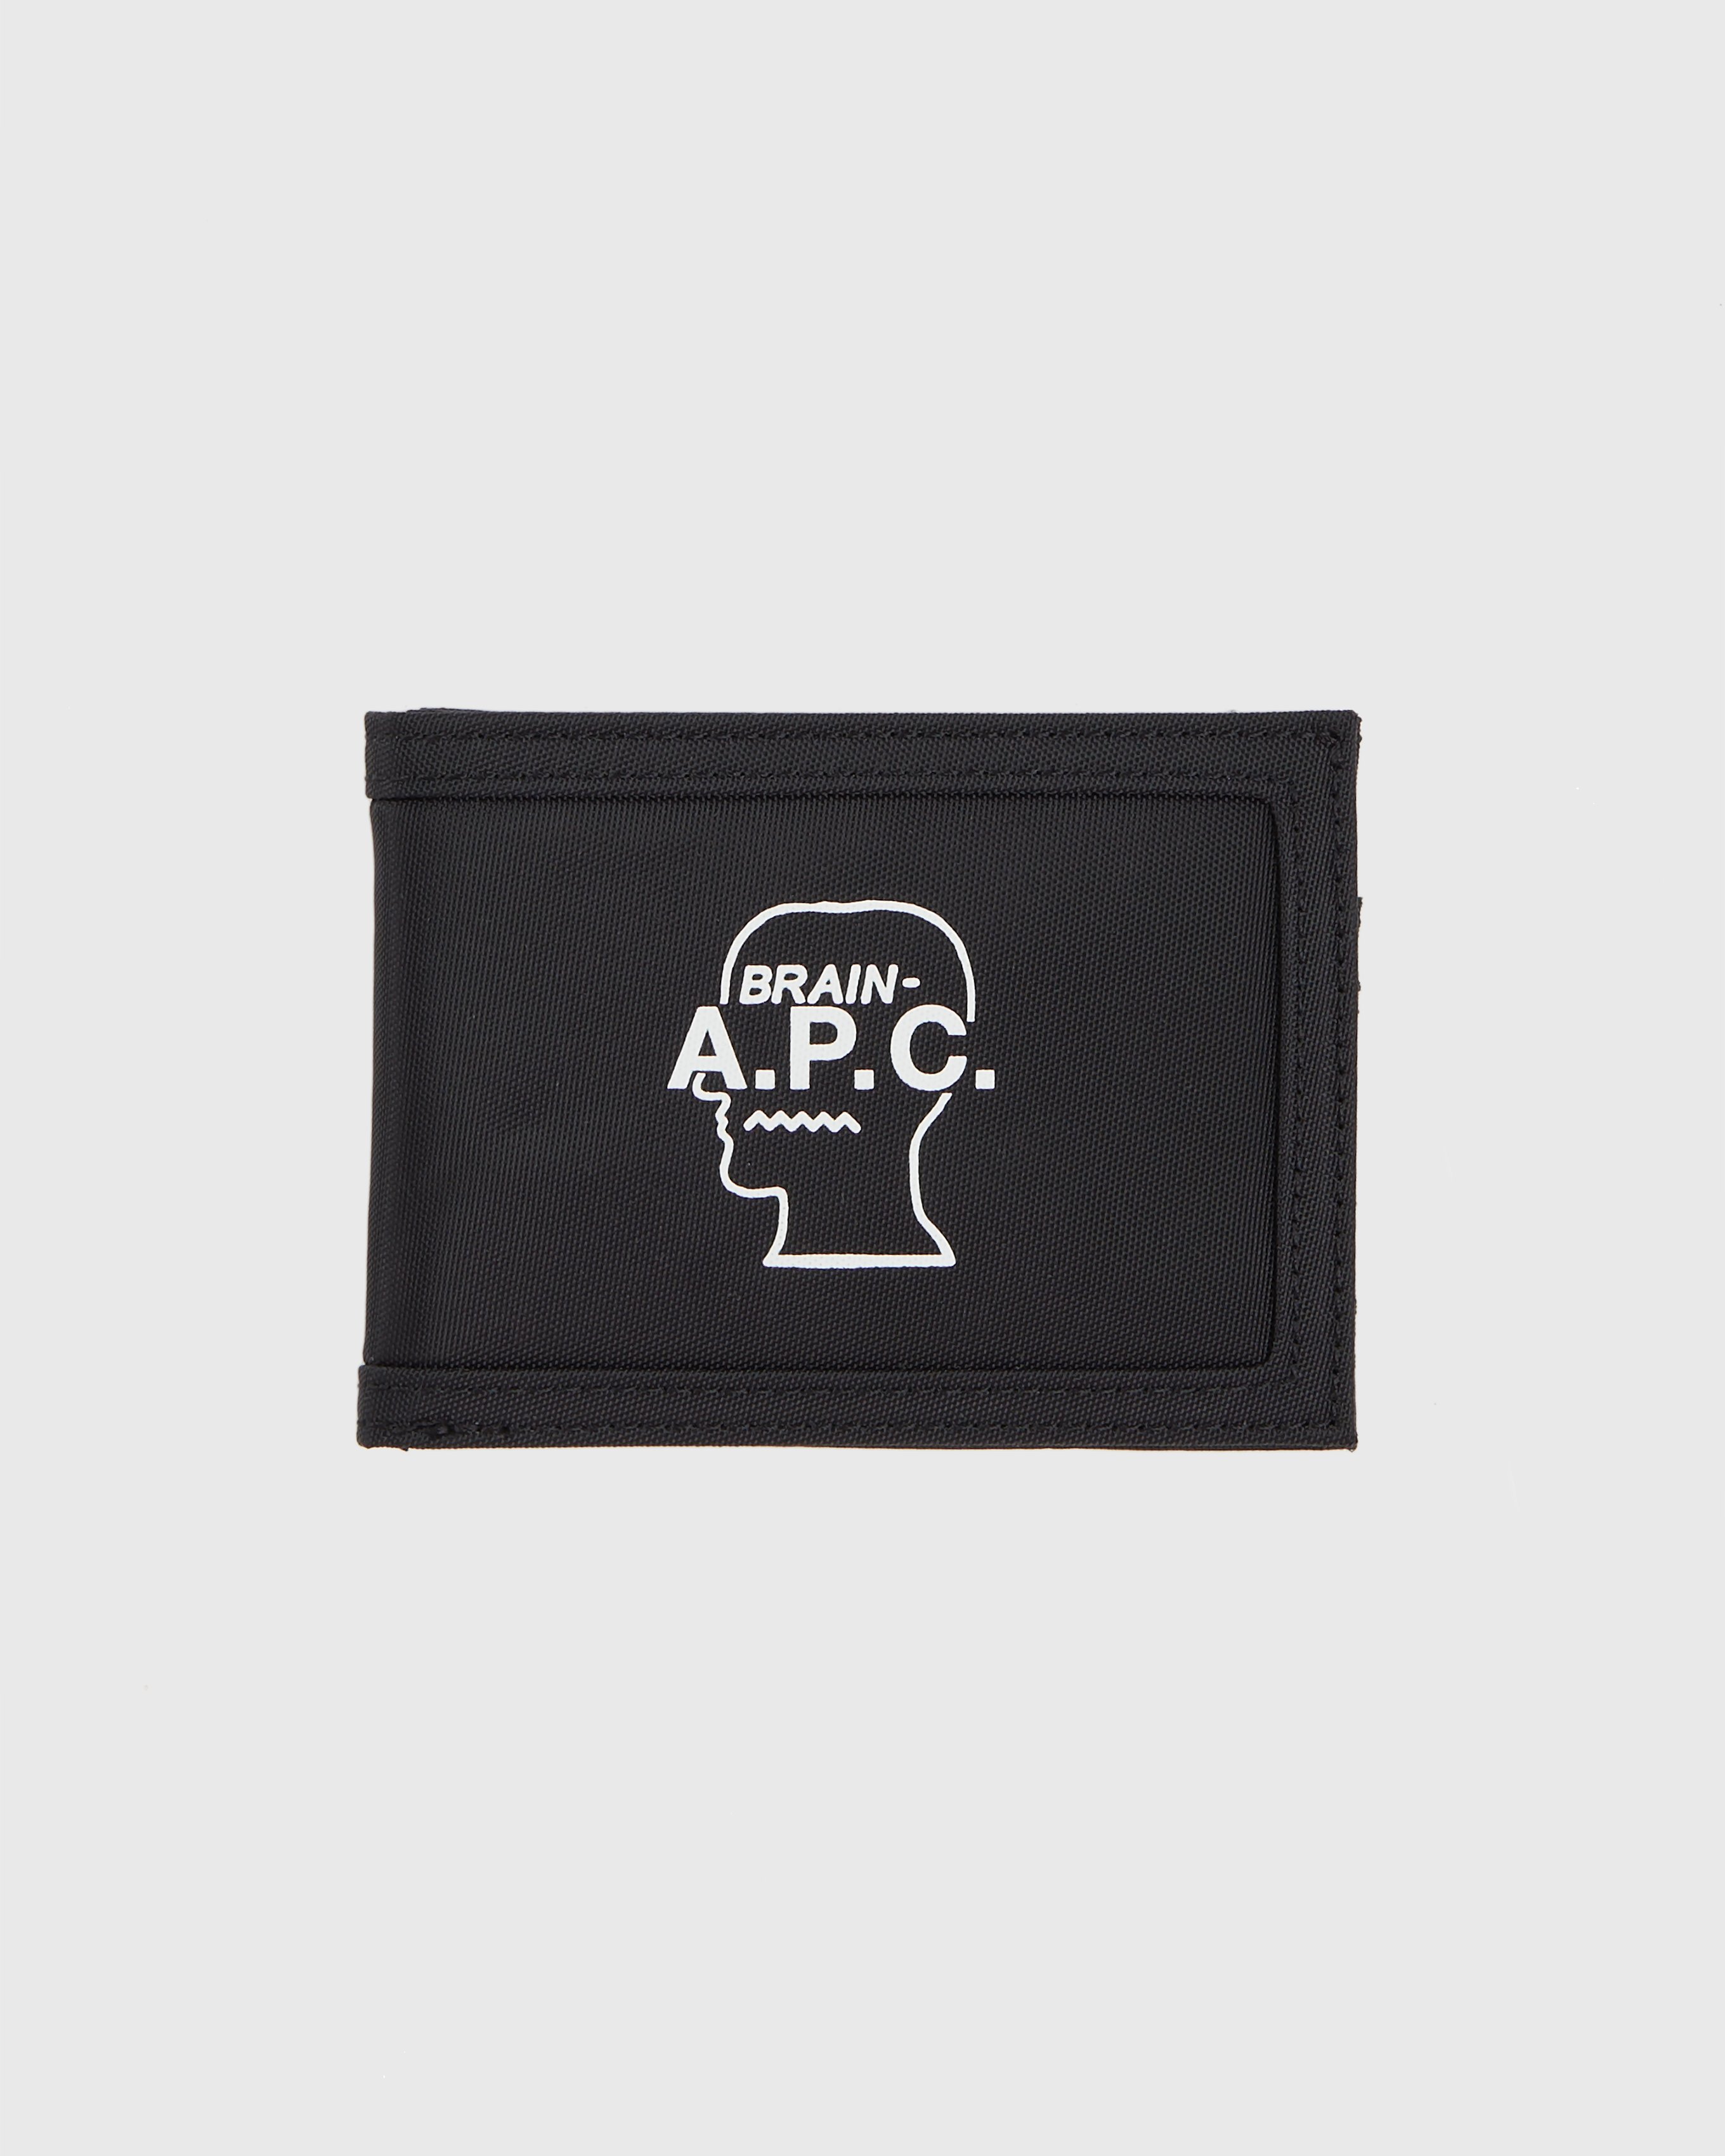 Brain Dead x A.P.C. - Black Porte-Cartes - Accessories - Black - Image 1